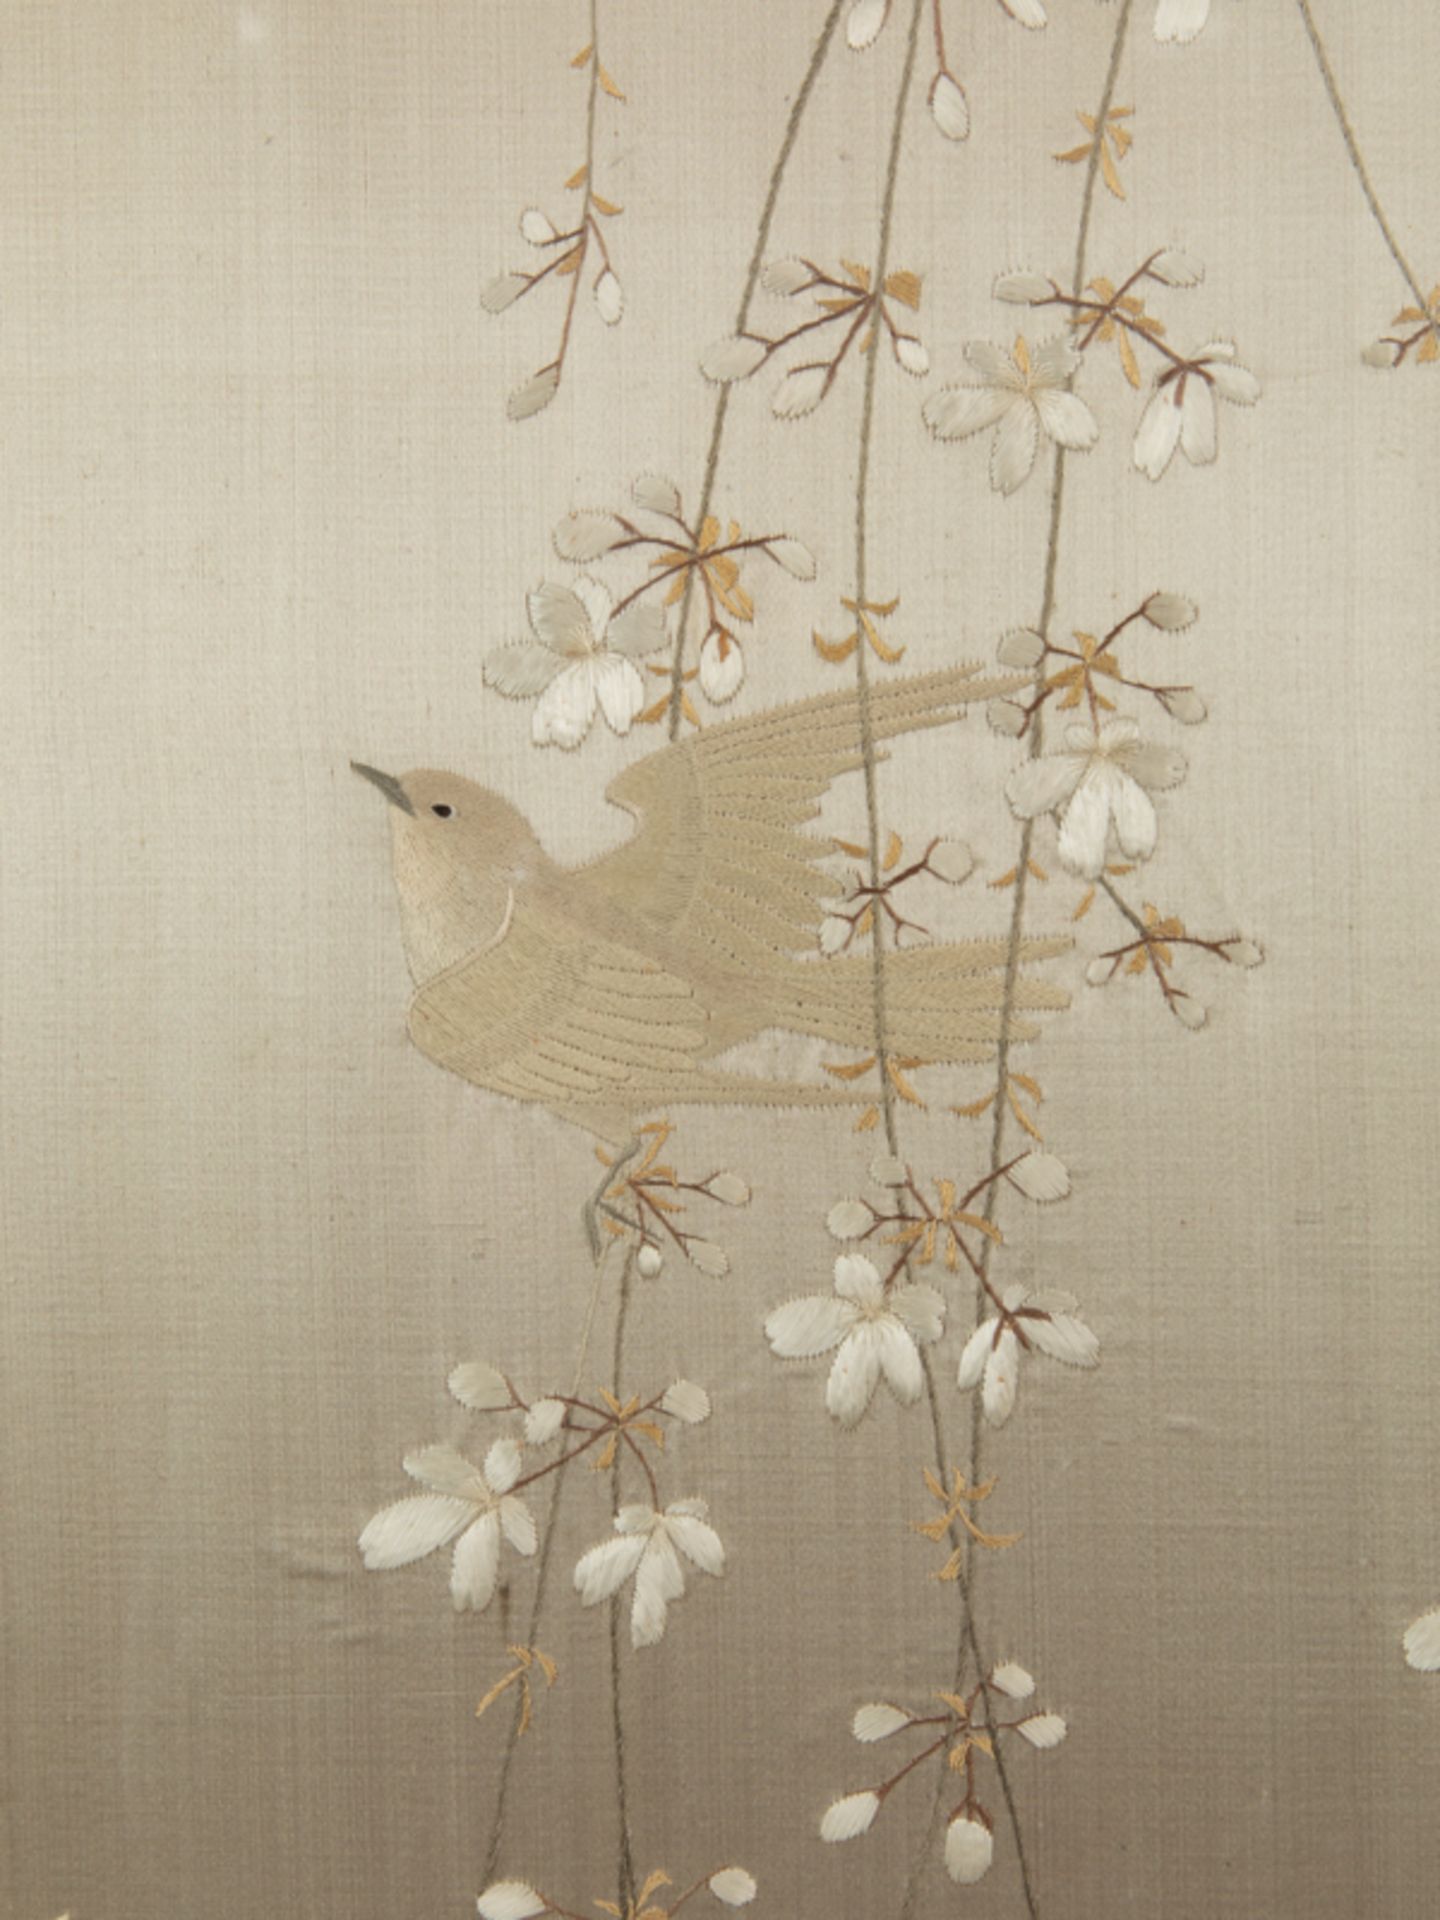 Singvögel in Blütenzweigen, Seidenbild, Japan, Meiji Zeit. - Image 3 of 10